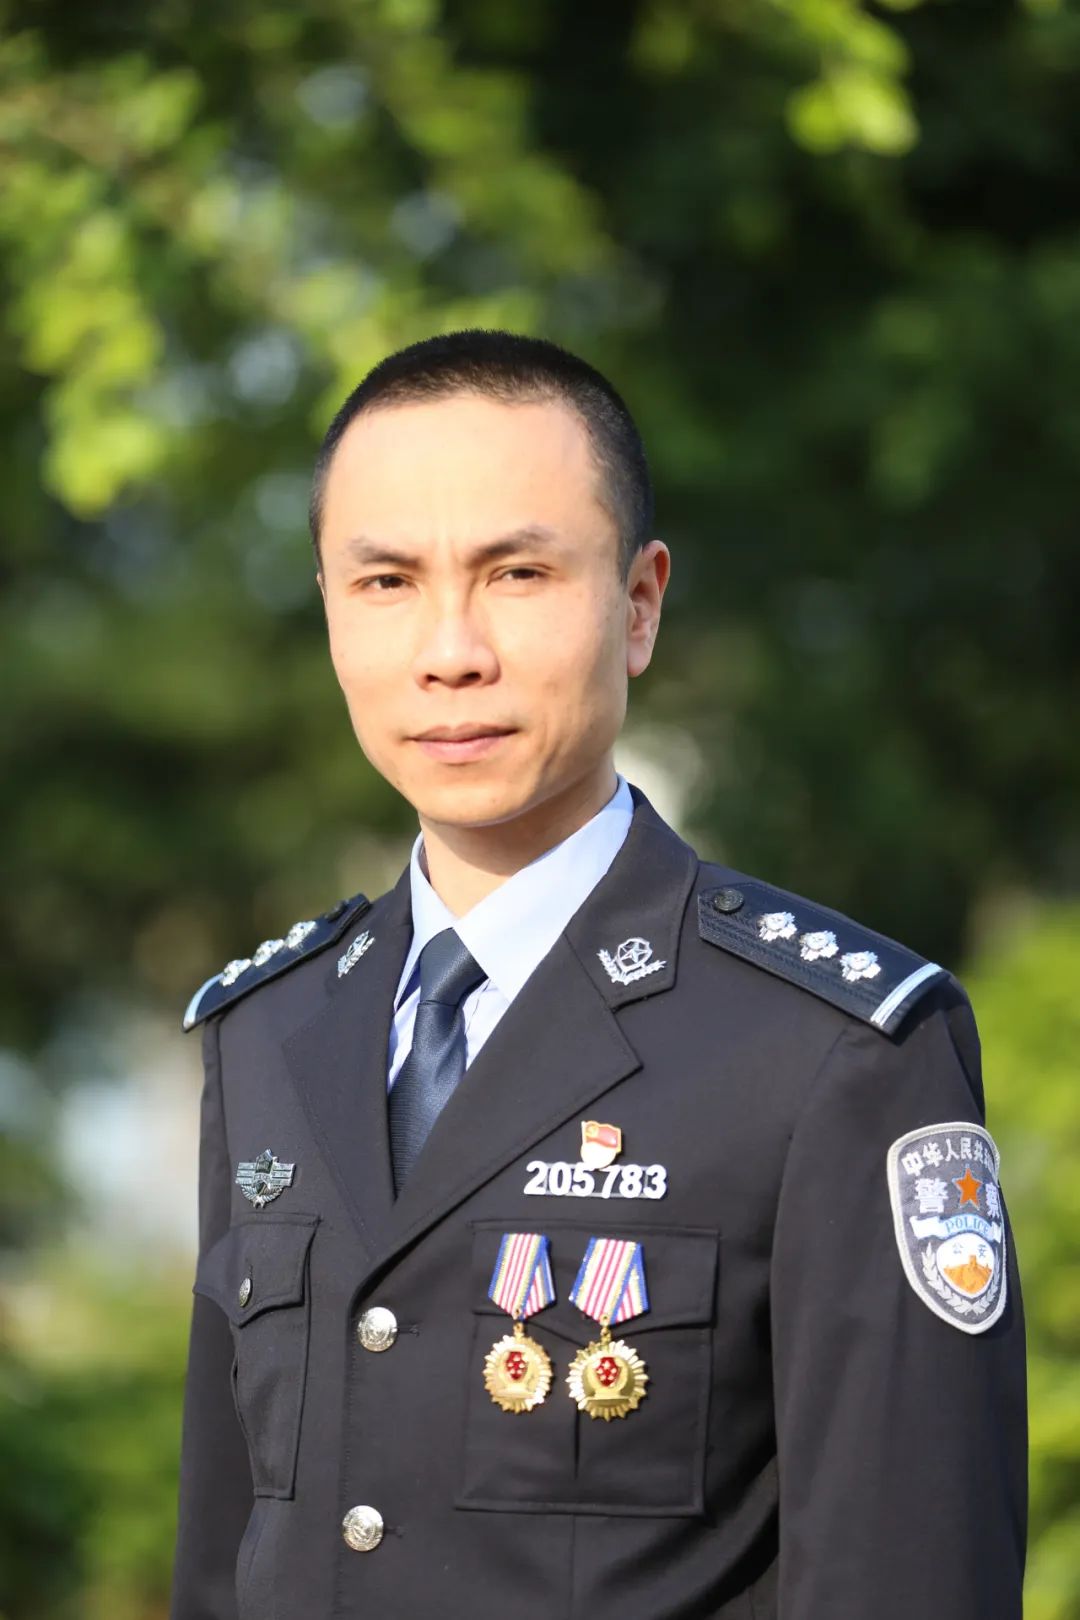 柳州市公安局刑事侦查支队城东责任区刑侦大队副大队长,一级警司警衔